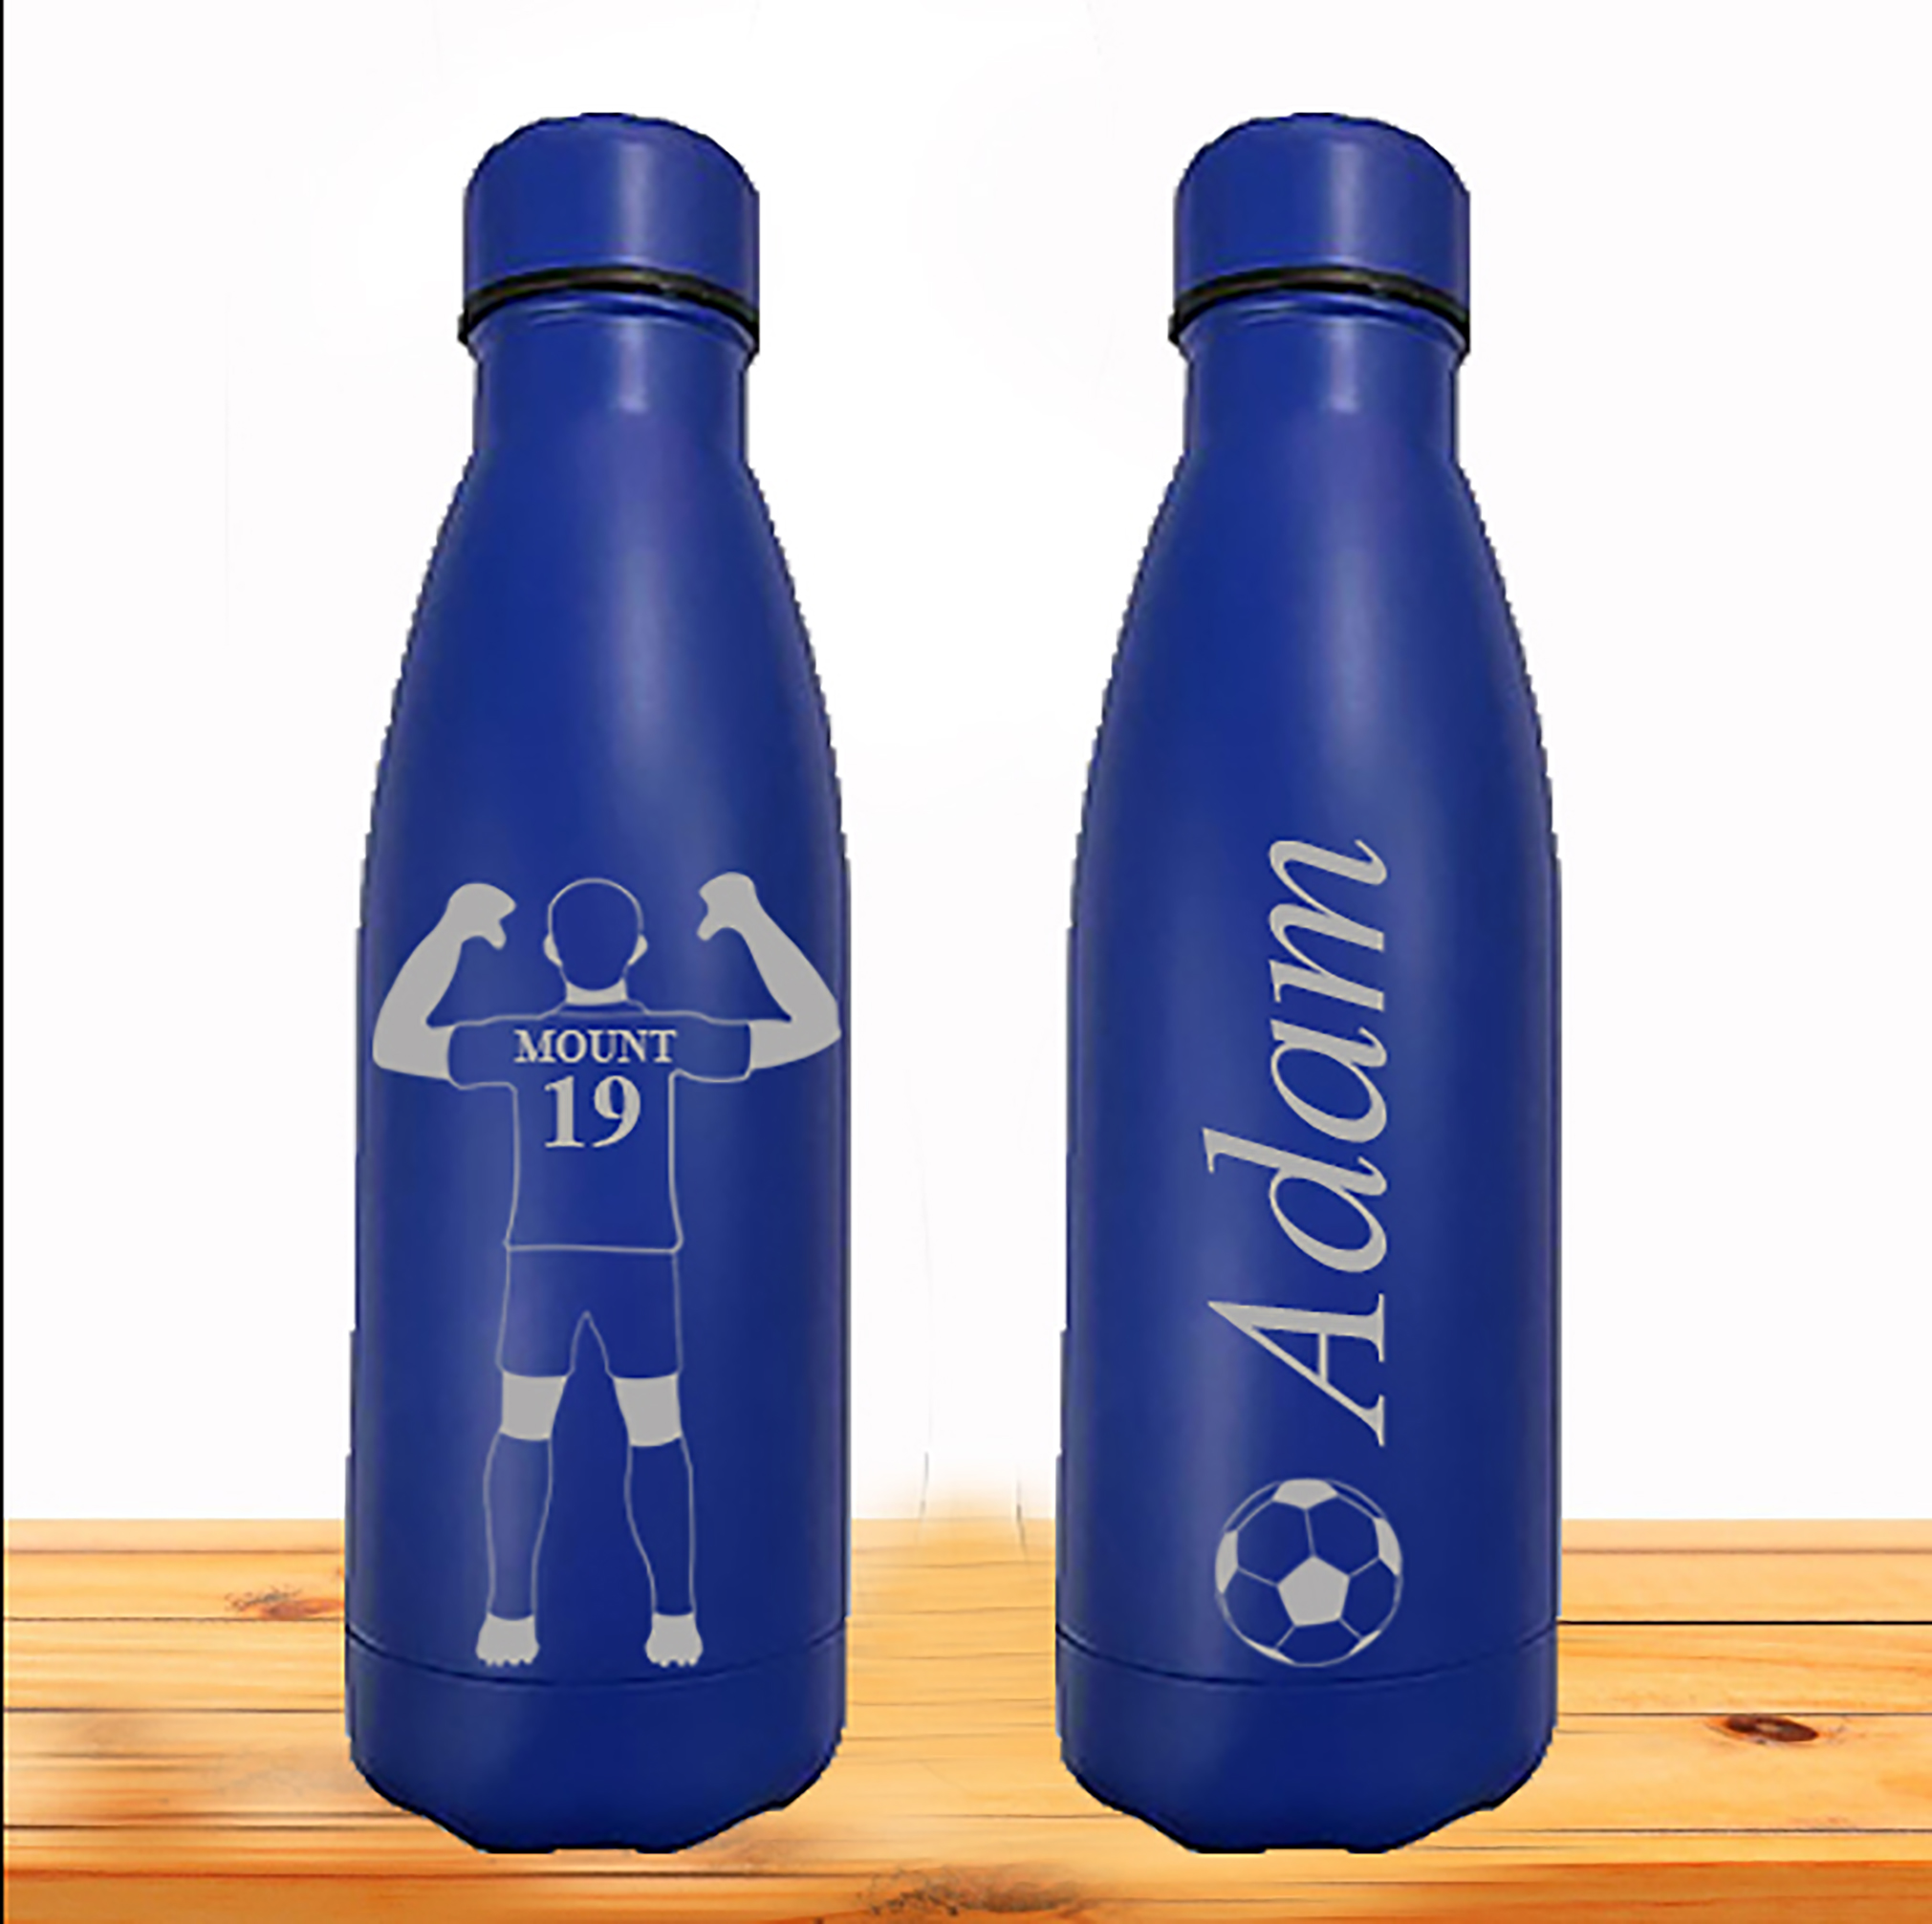 https://www.vaultnw.co.uk/wp-content/uploads/2022/12/Blue-Bottle-Mount-Both-sides.jpg